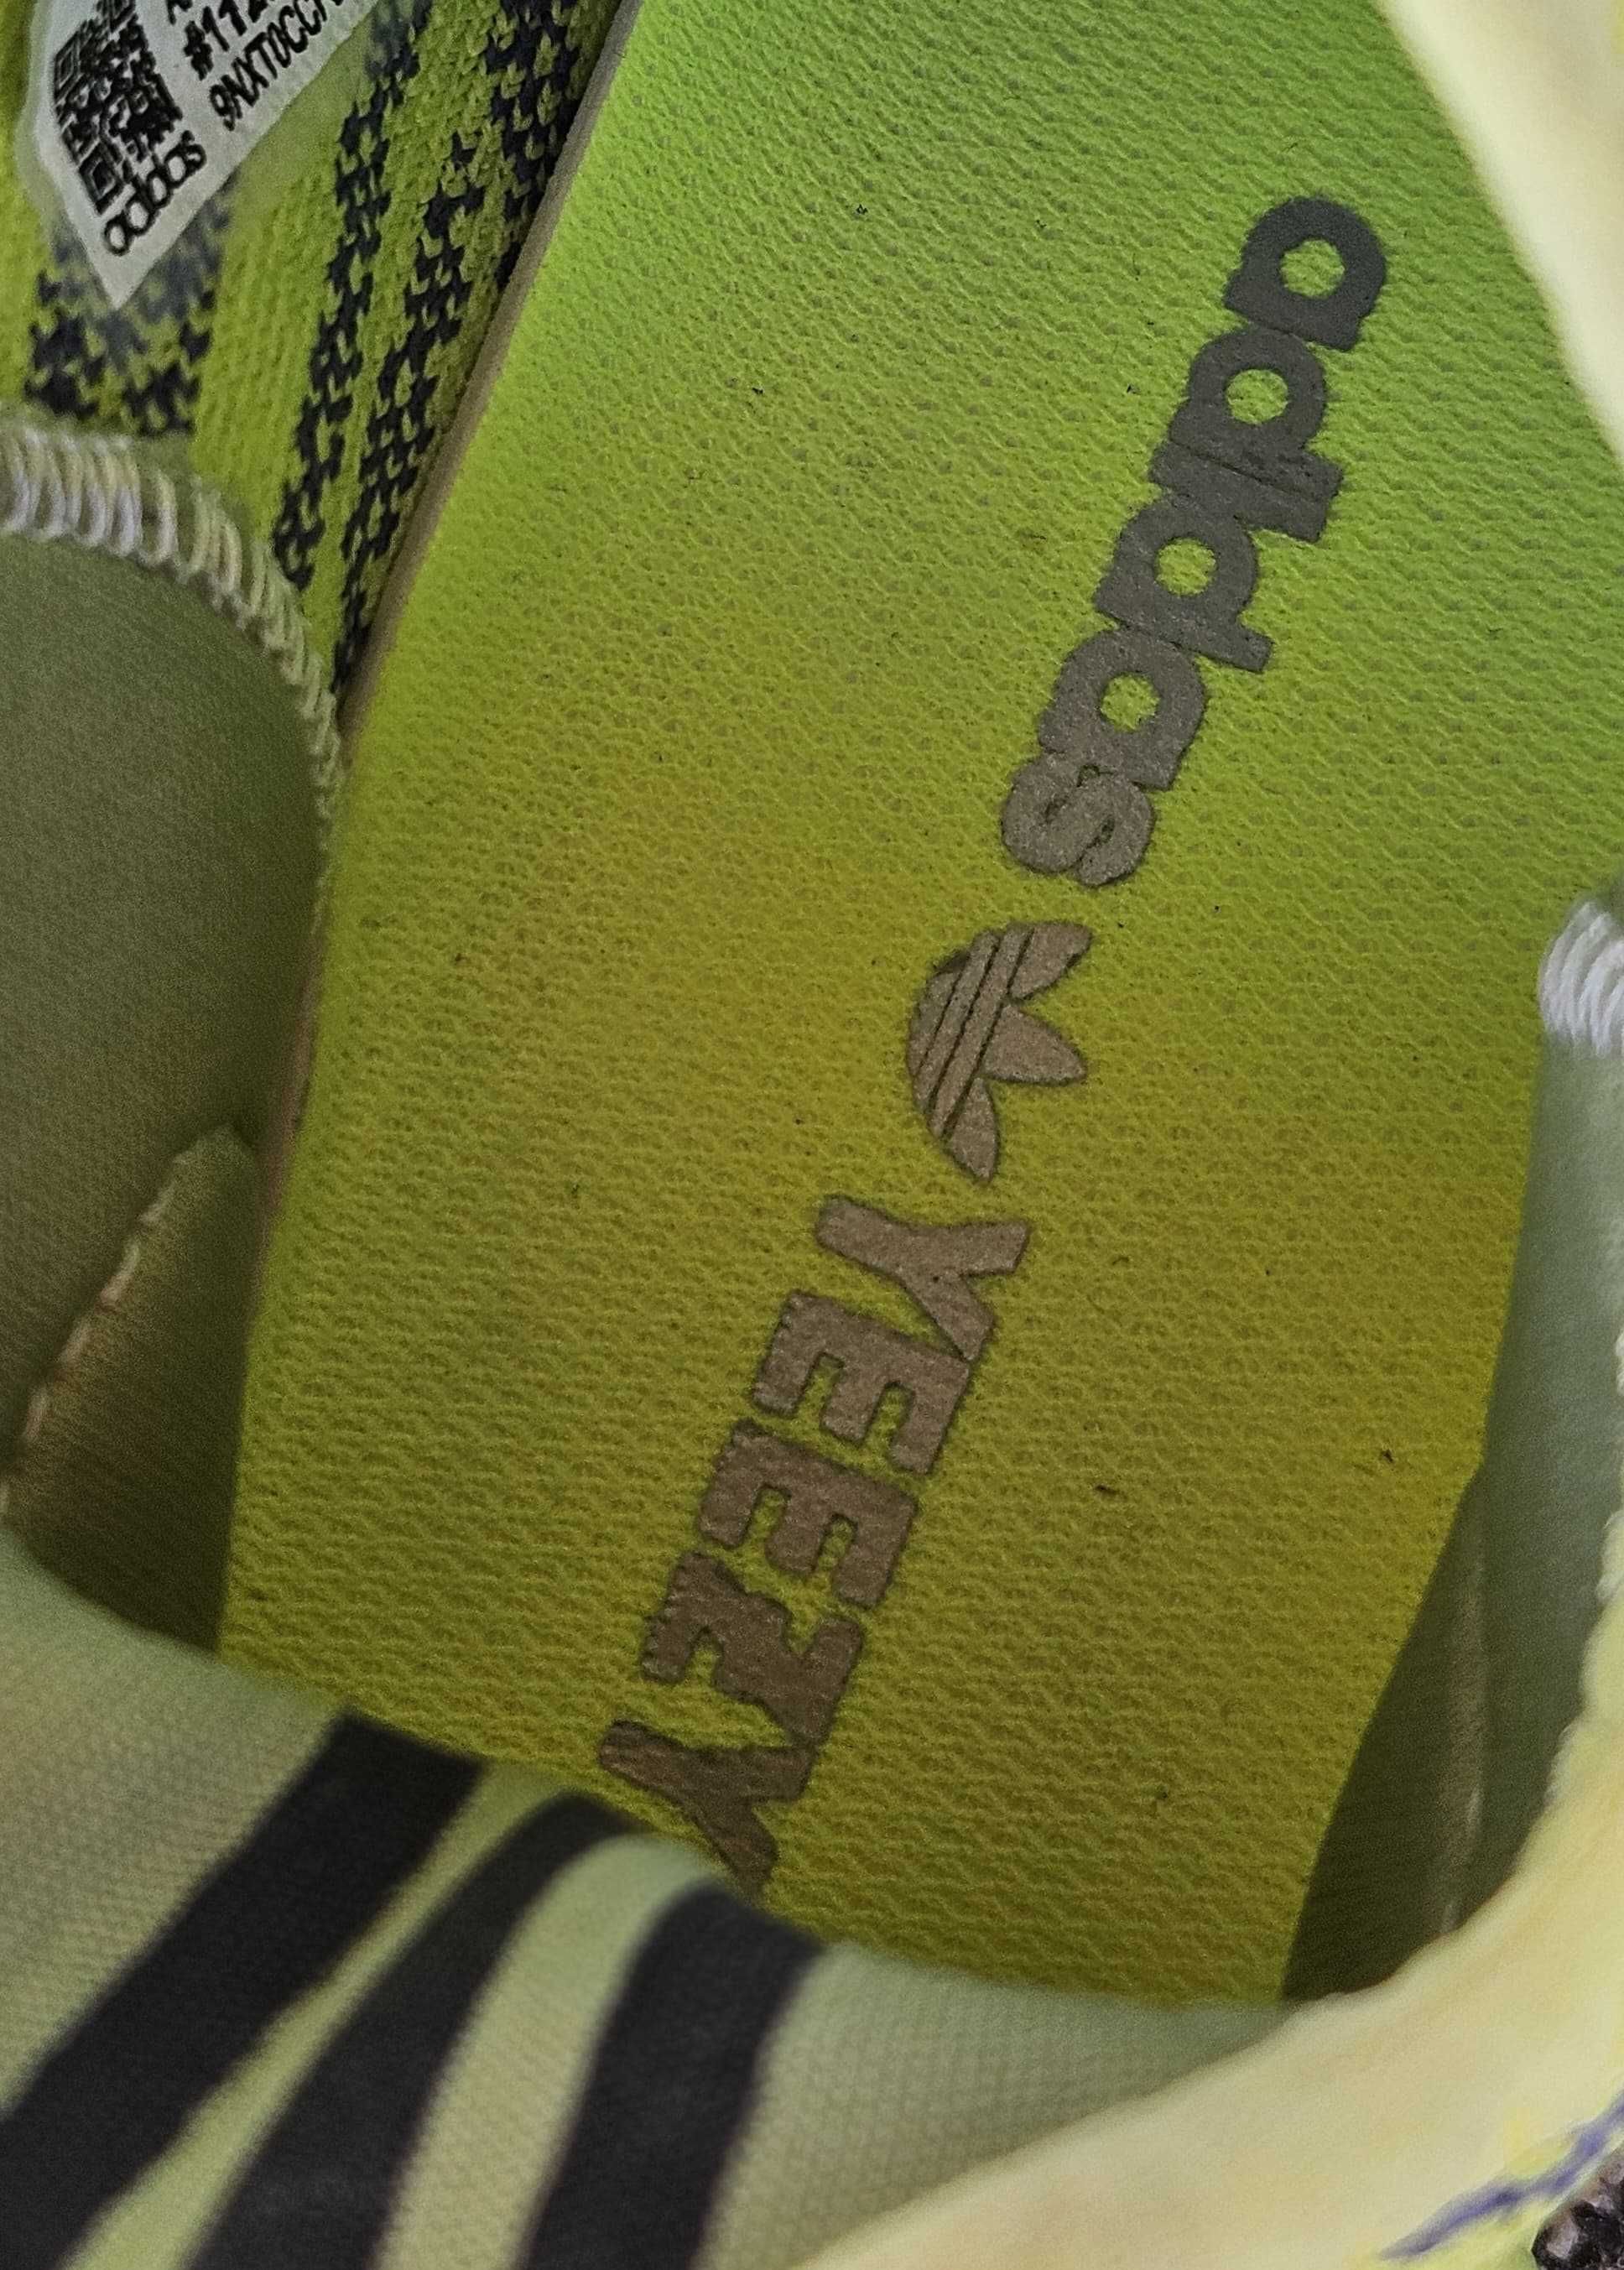 Adidas Yeezy Boost 350 Verde